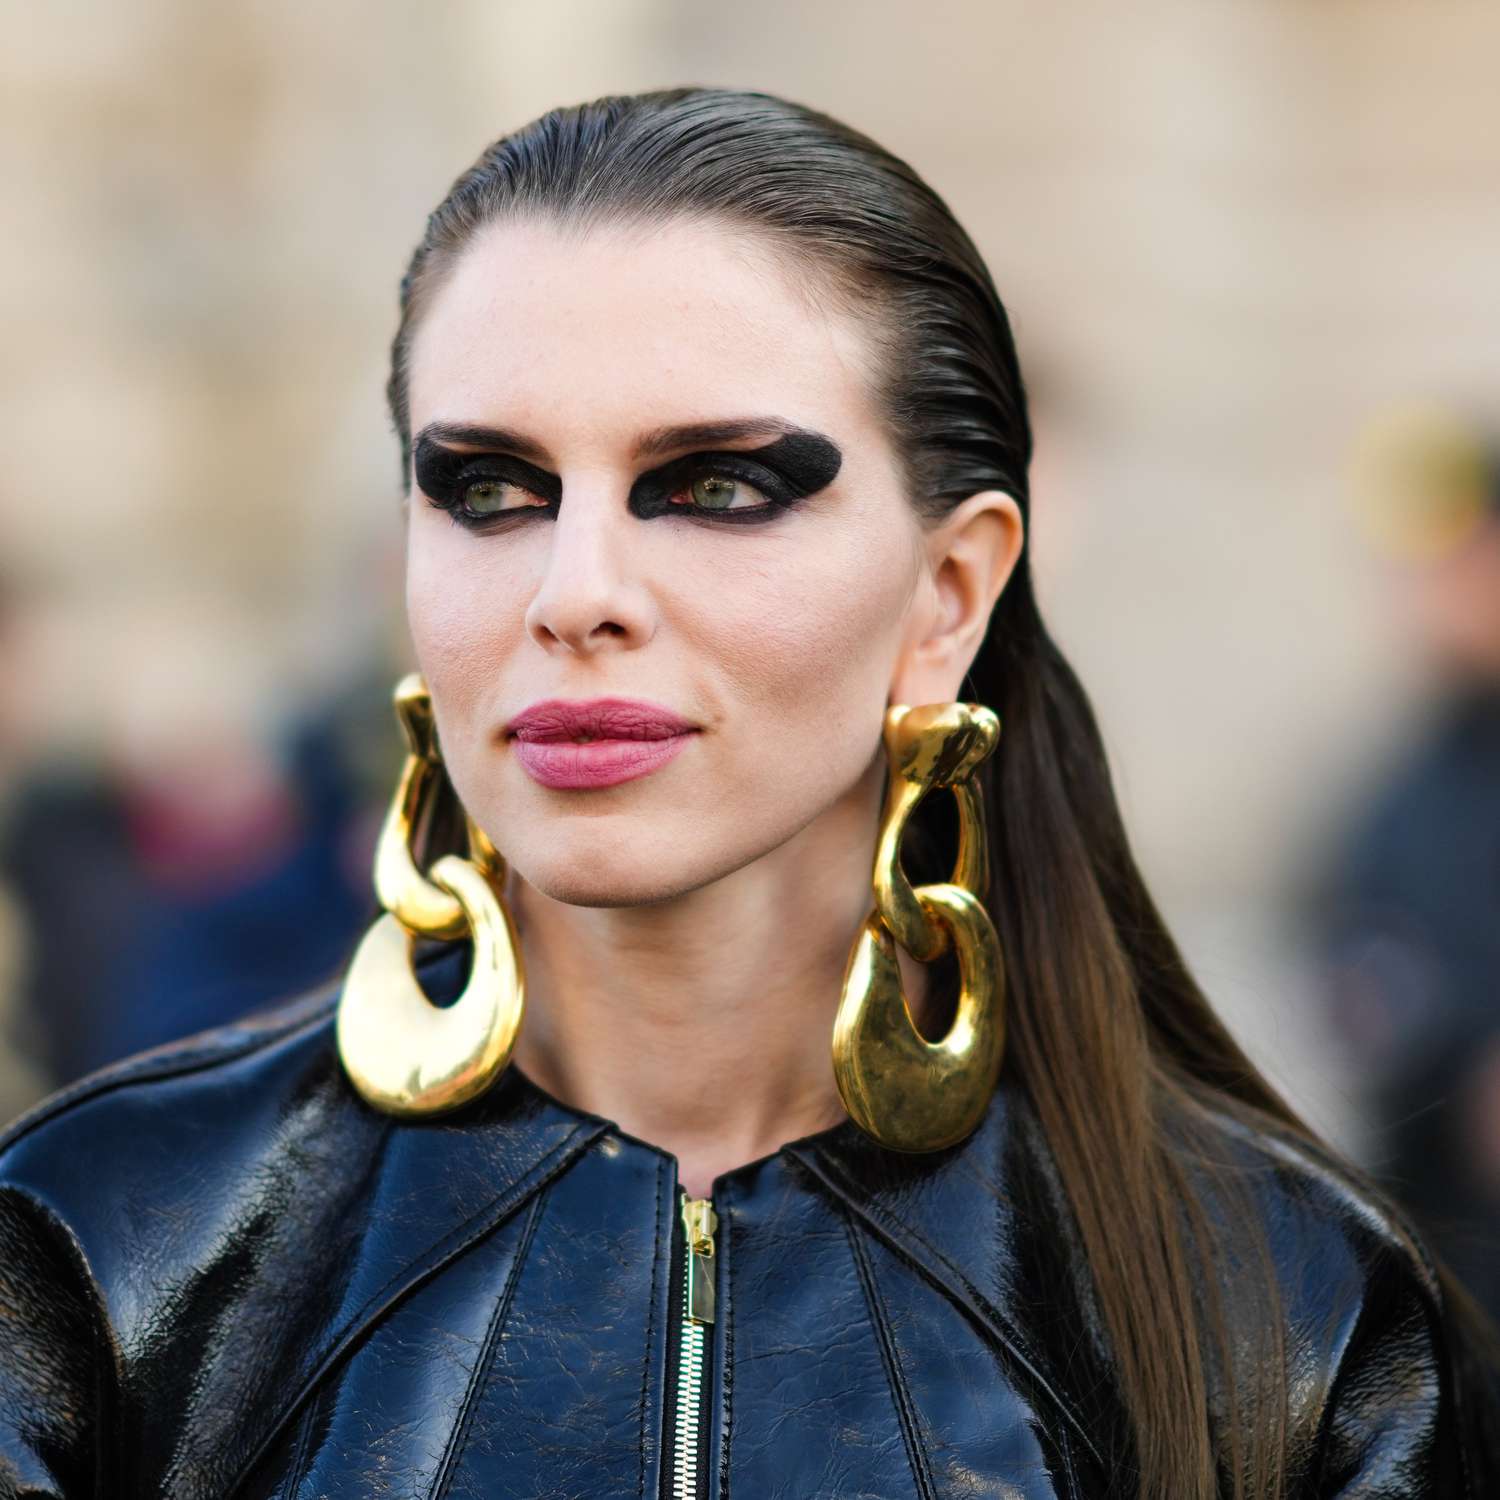 Julia Fox na dramática maquiagem negra dos olhos e brincos de ouro na semana de moda em Paris.